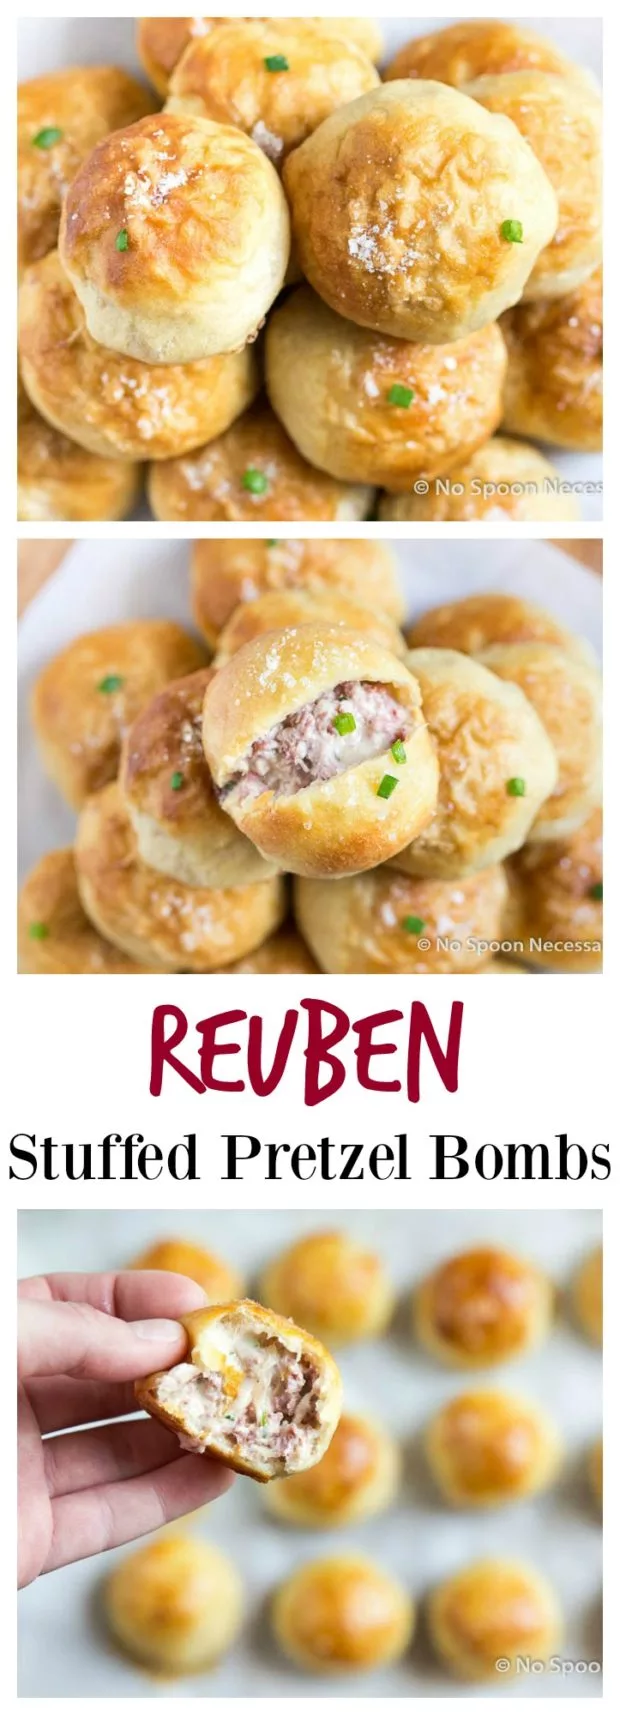 reuben stuffed preztel bombs long pin2